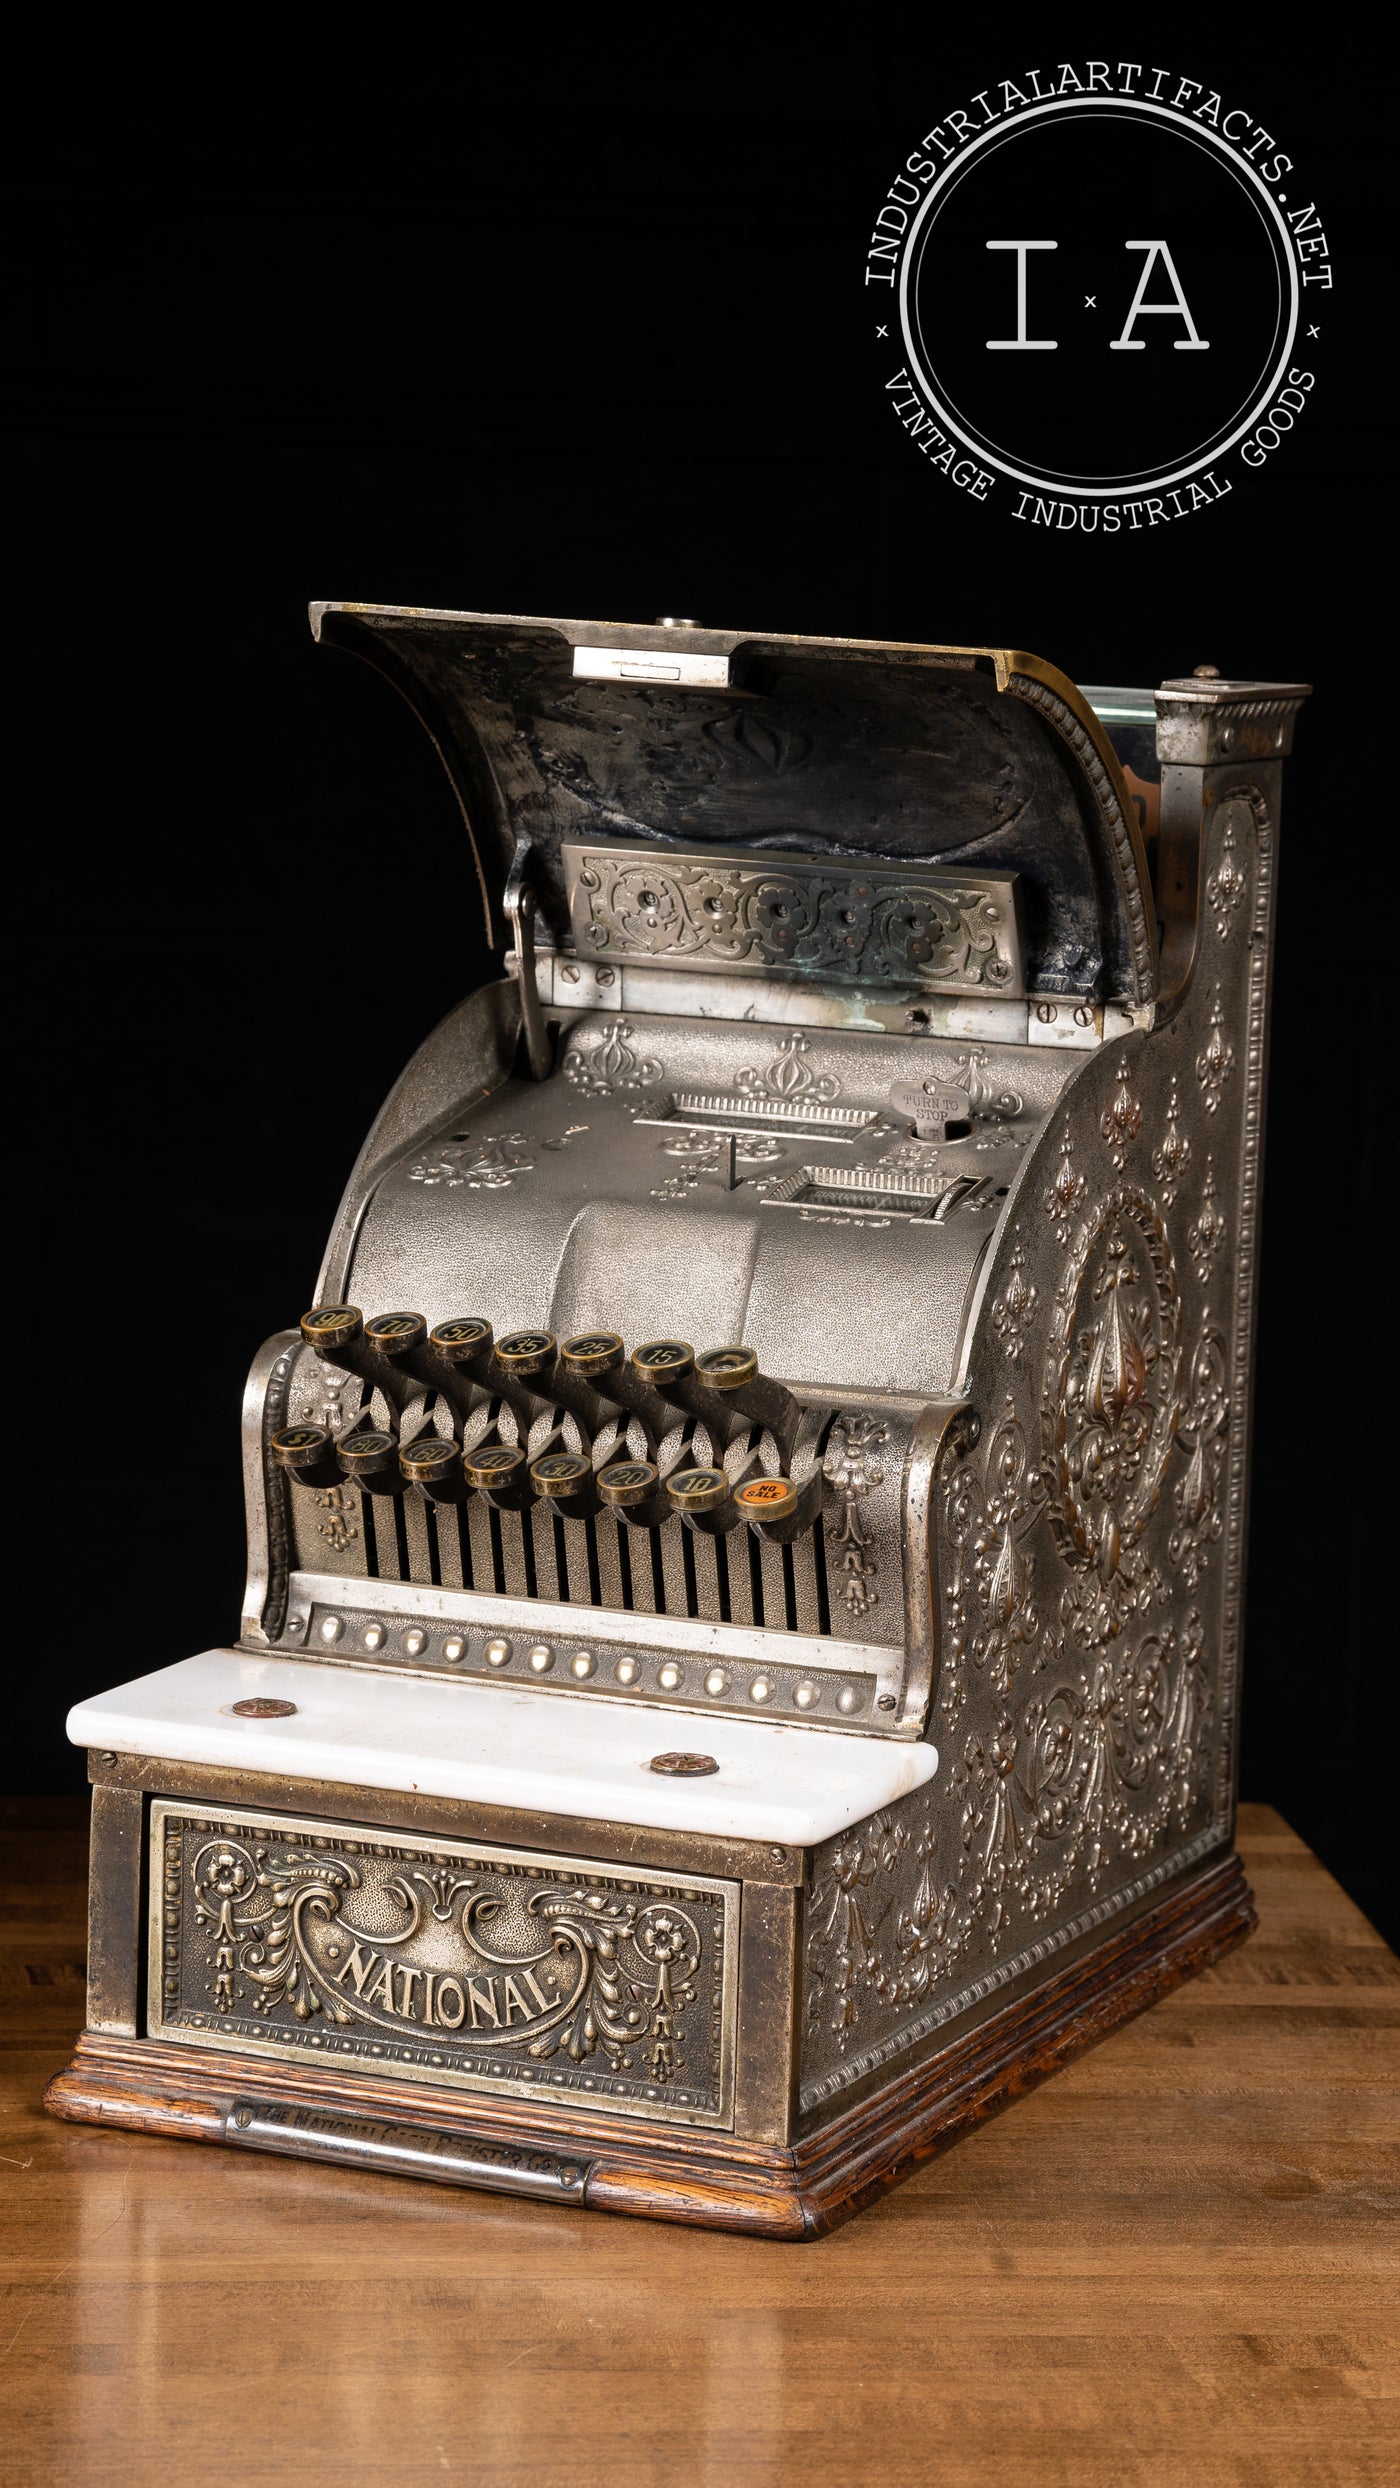 Antique National Cash Register Model 313